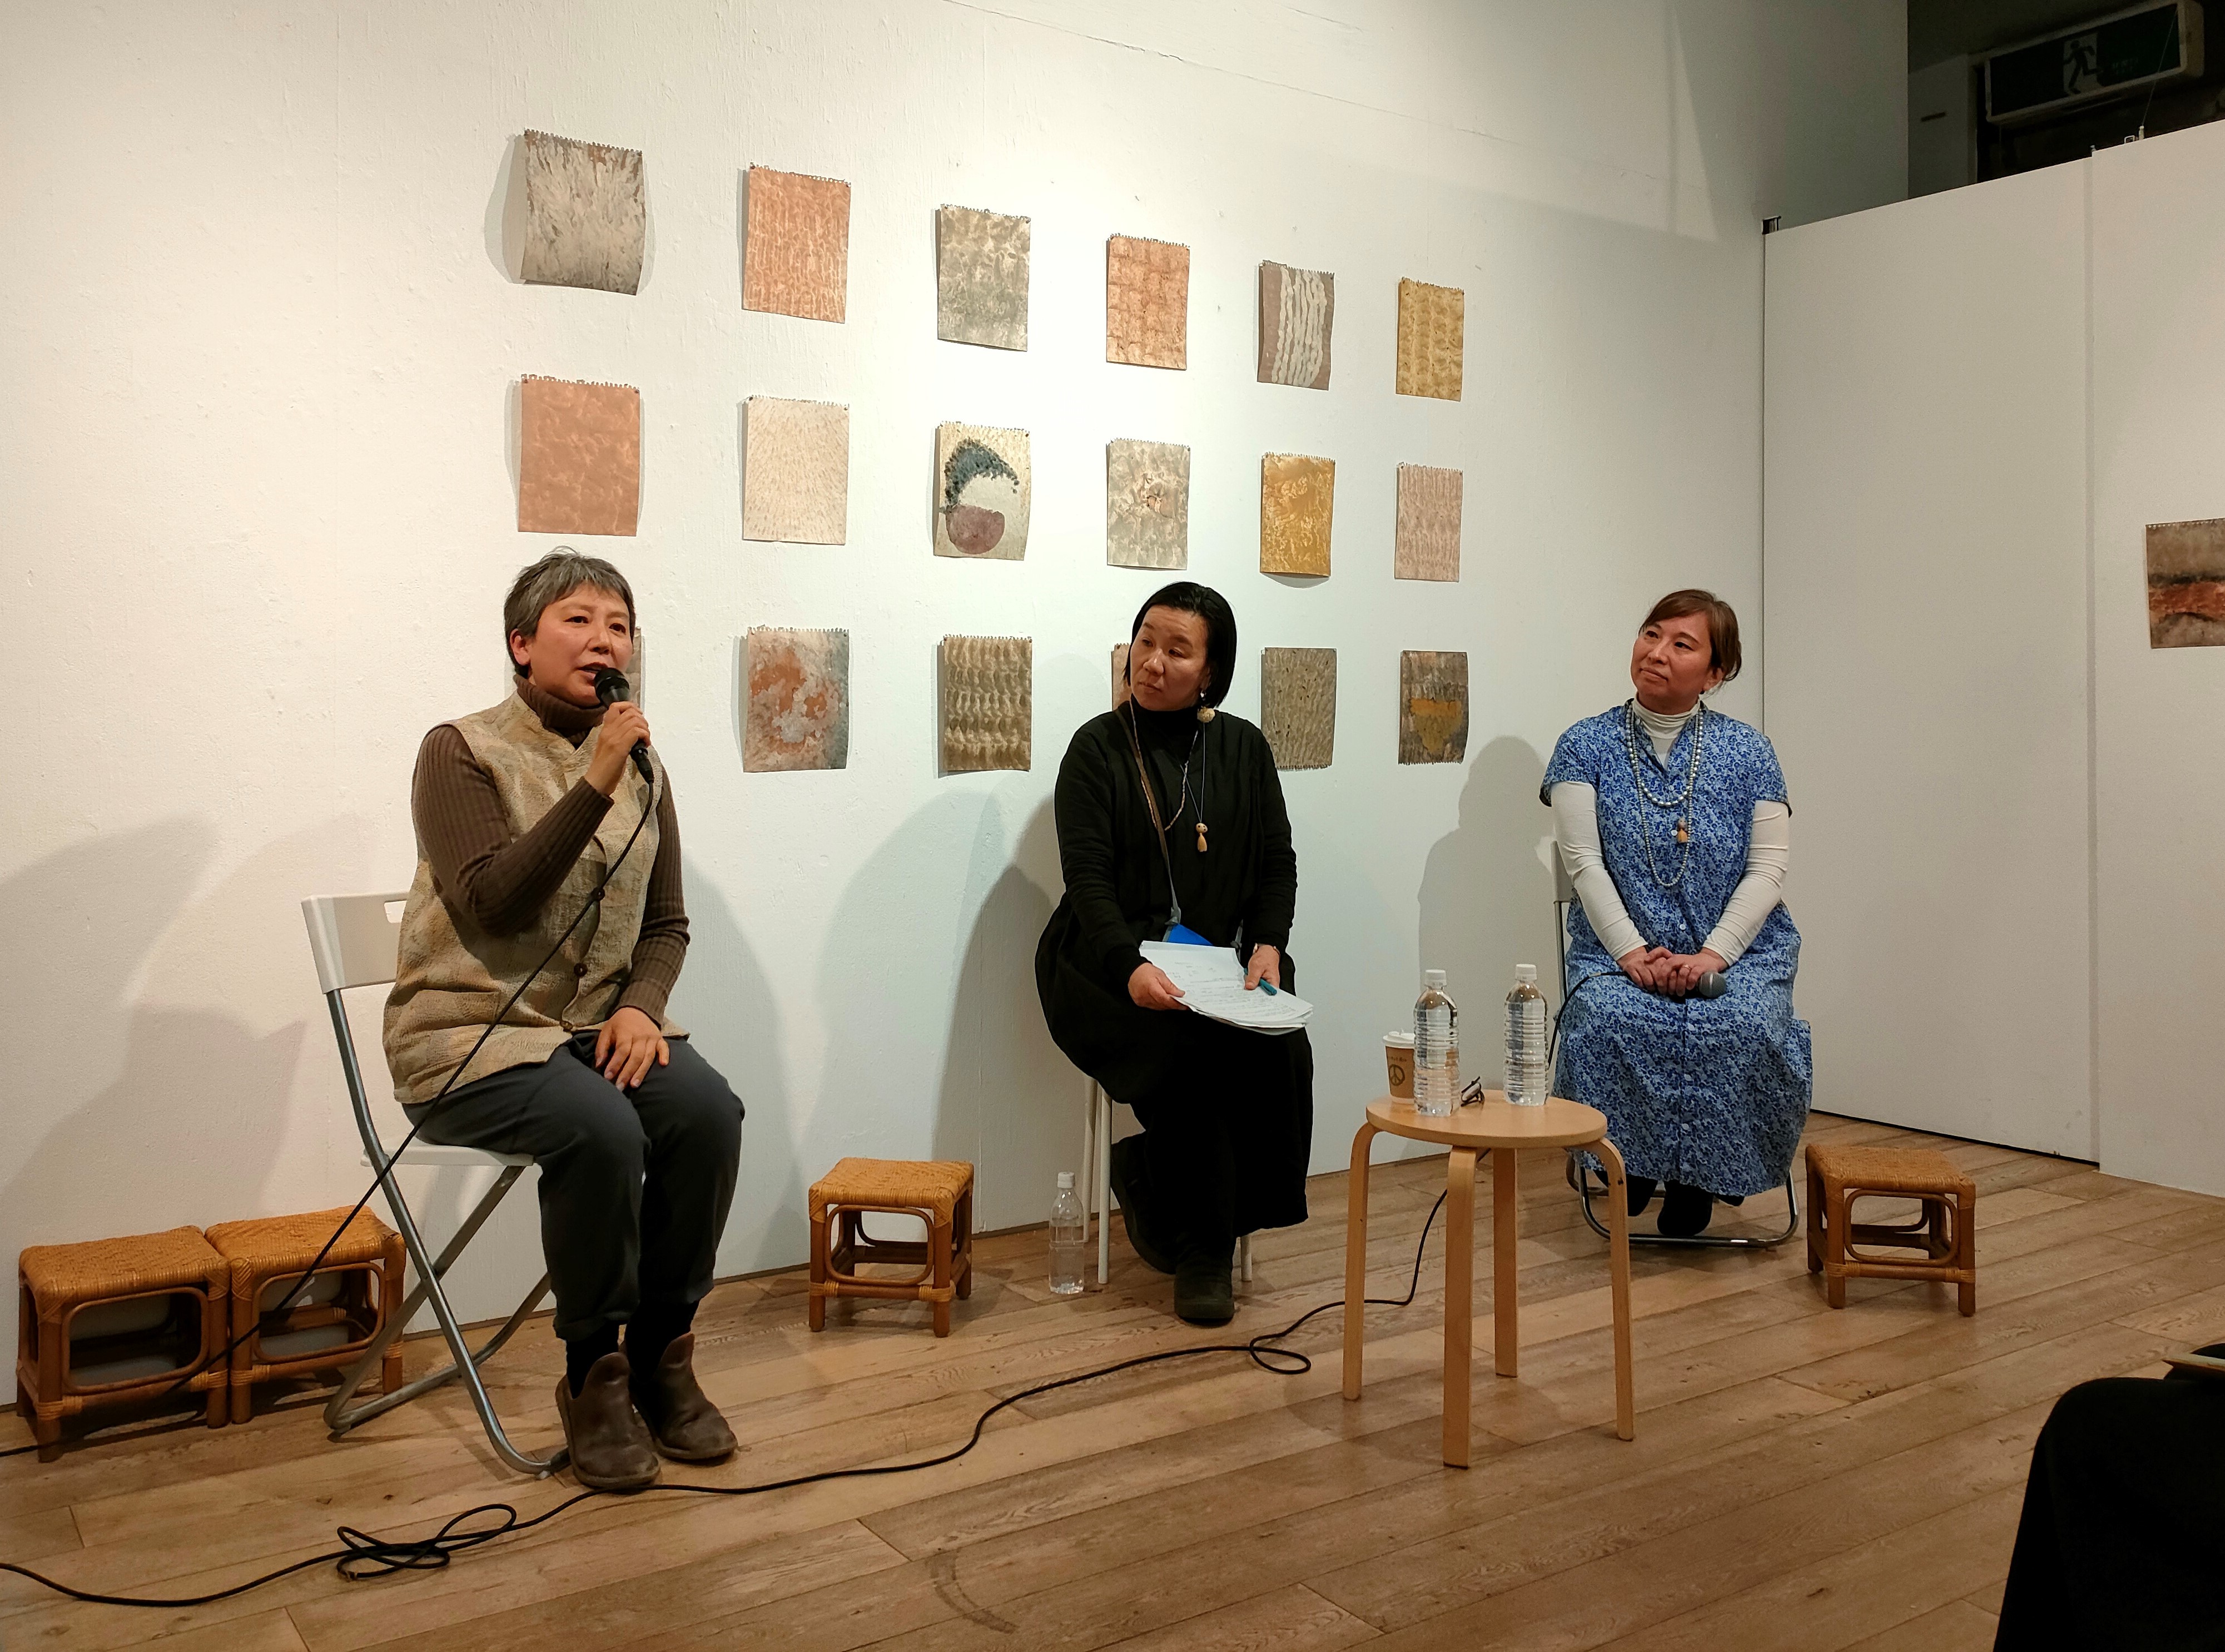 3月16日に行われたトークイベント「痛みを希望に変えるアートって何だろう」。左から、髙濱浩子さん、林淳子さん、森合音さん